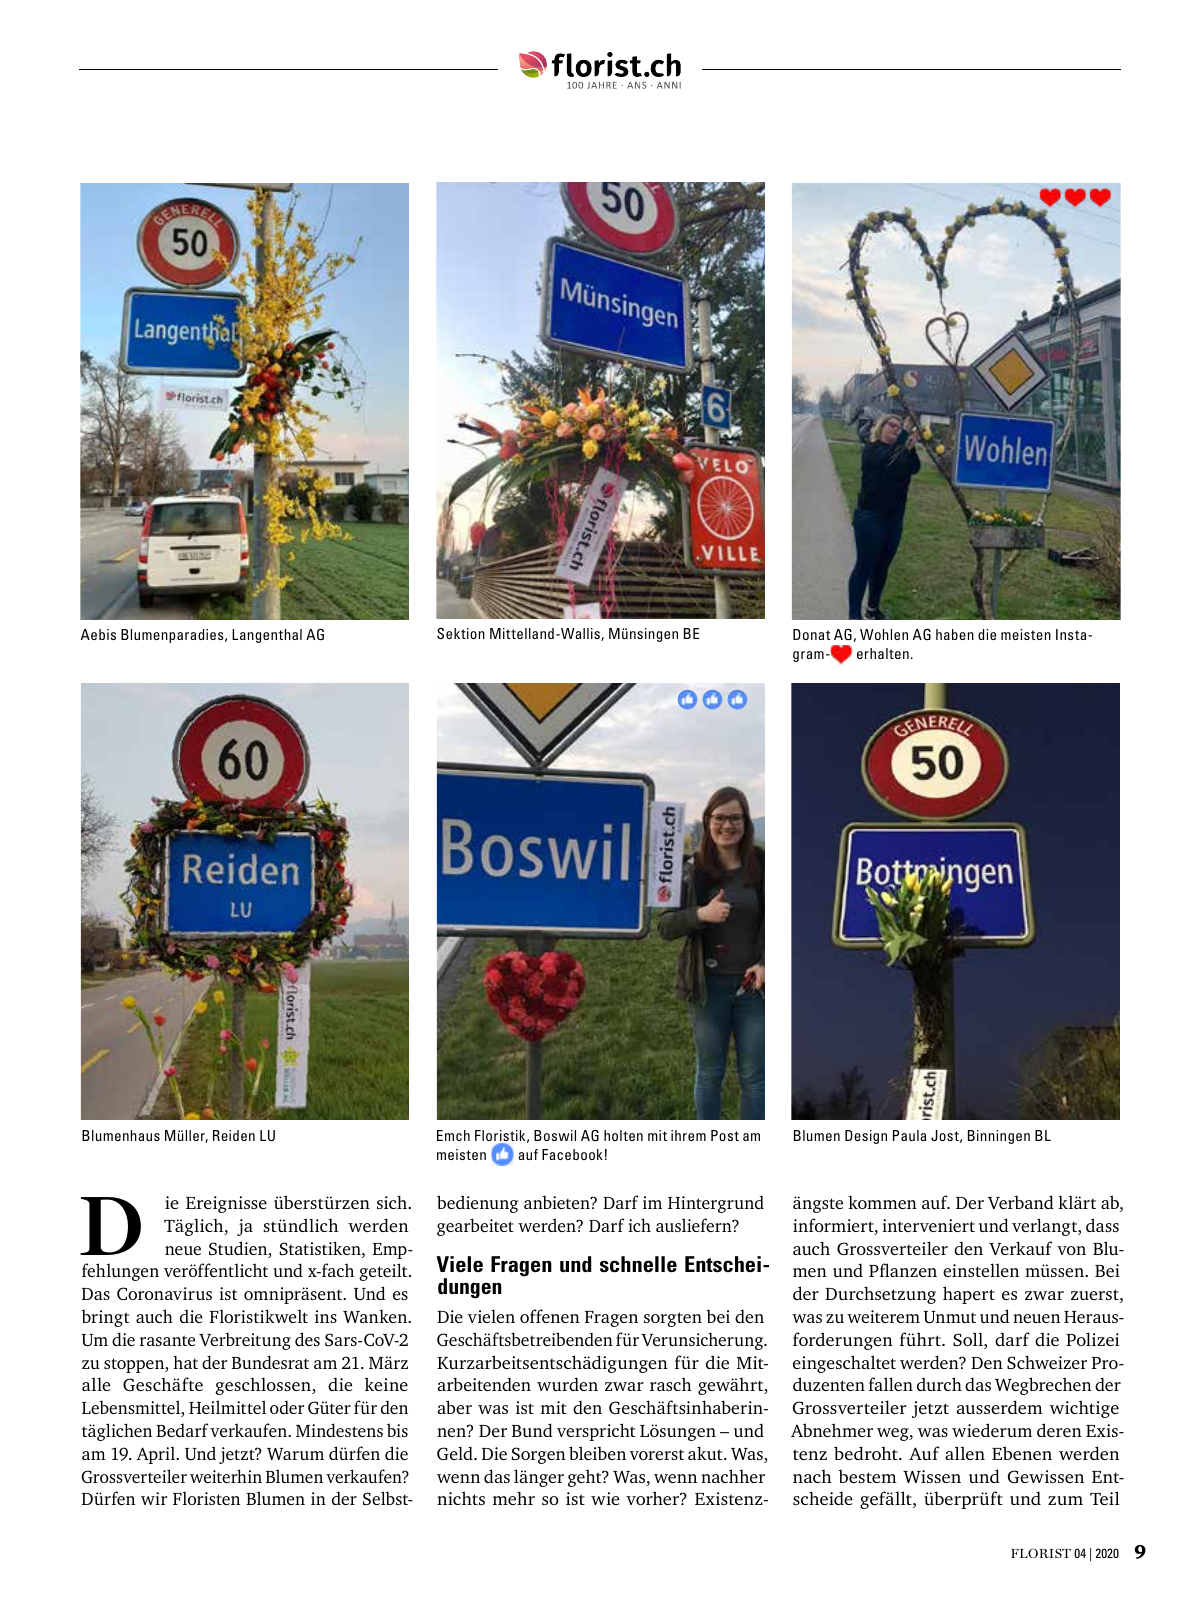 Vorschau Florist - Ausgabe April 2020 Seite 7